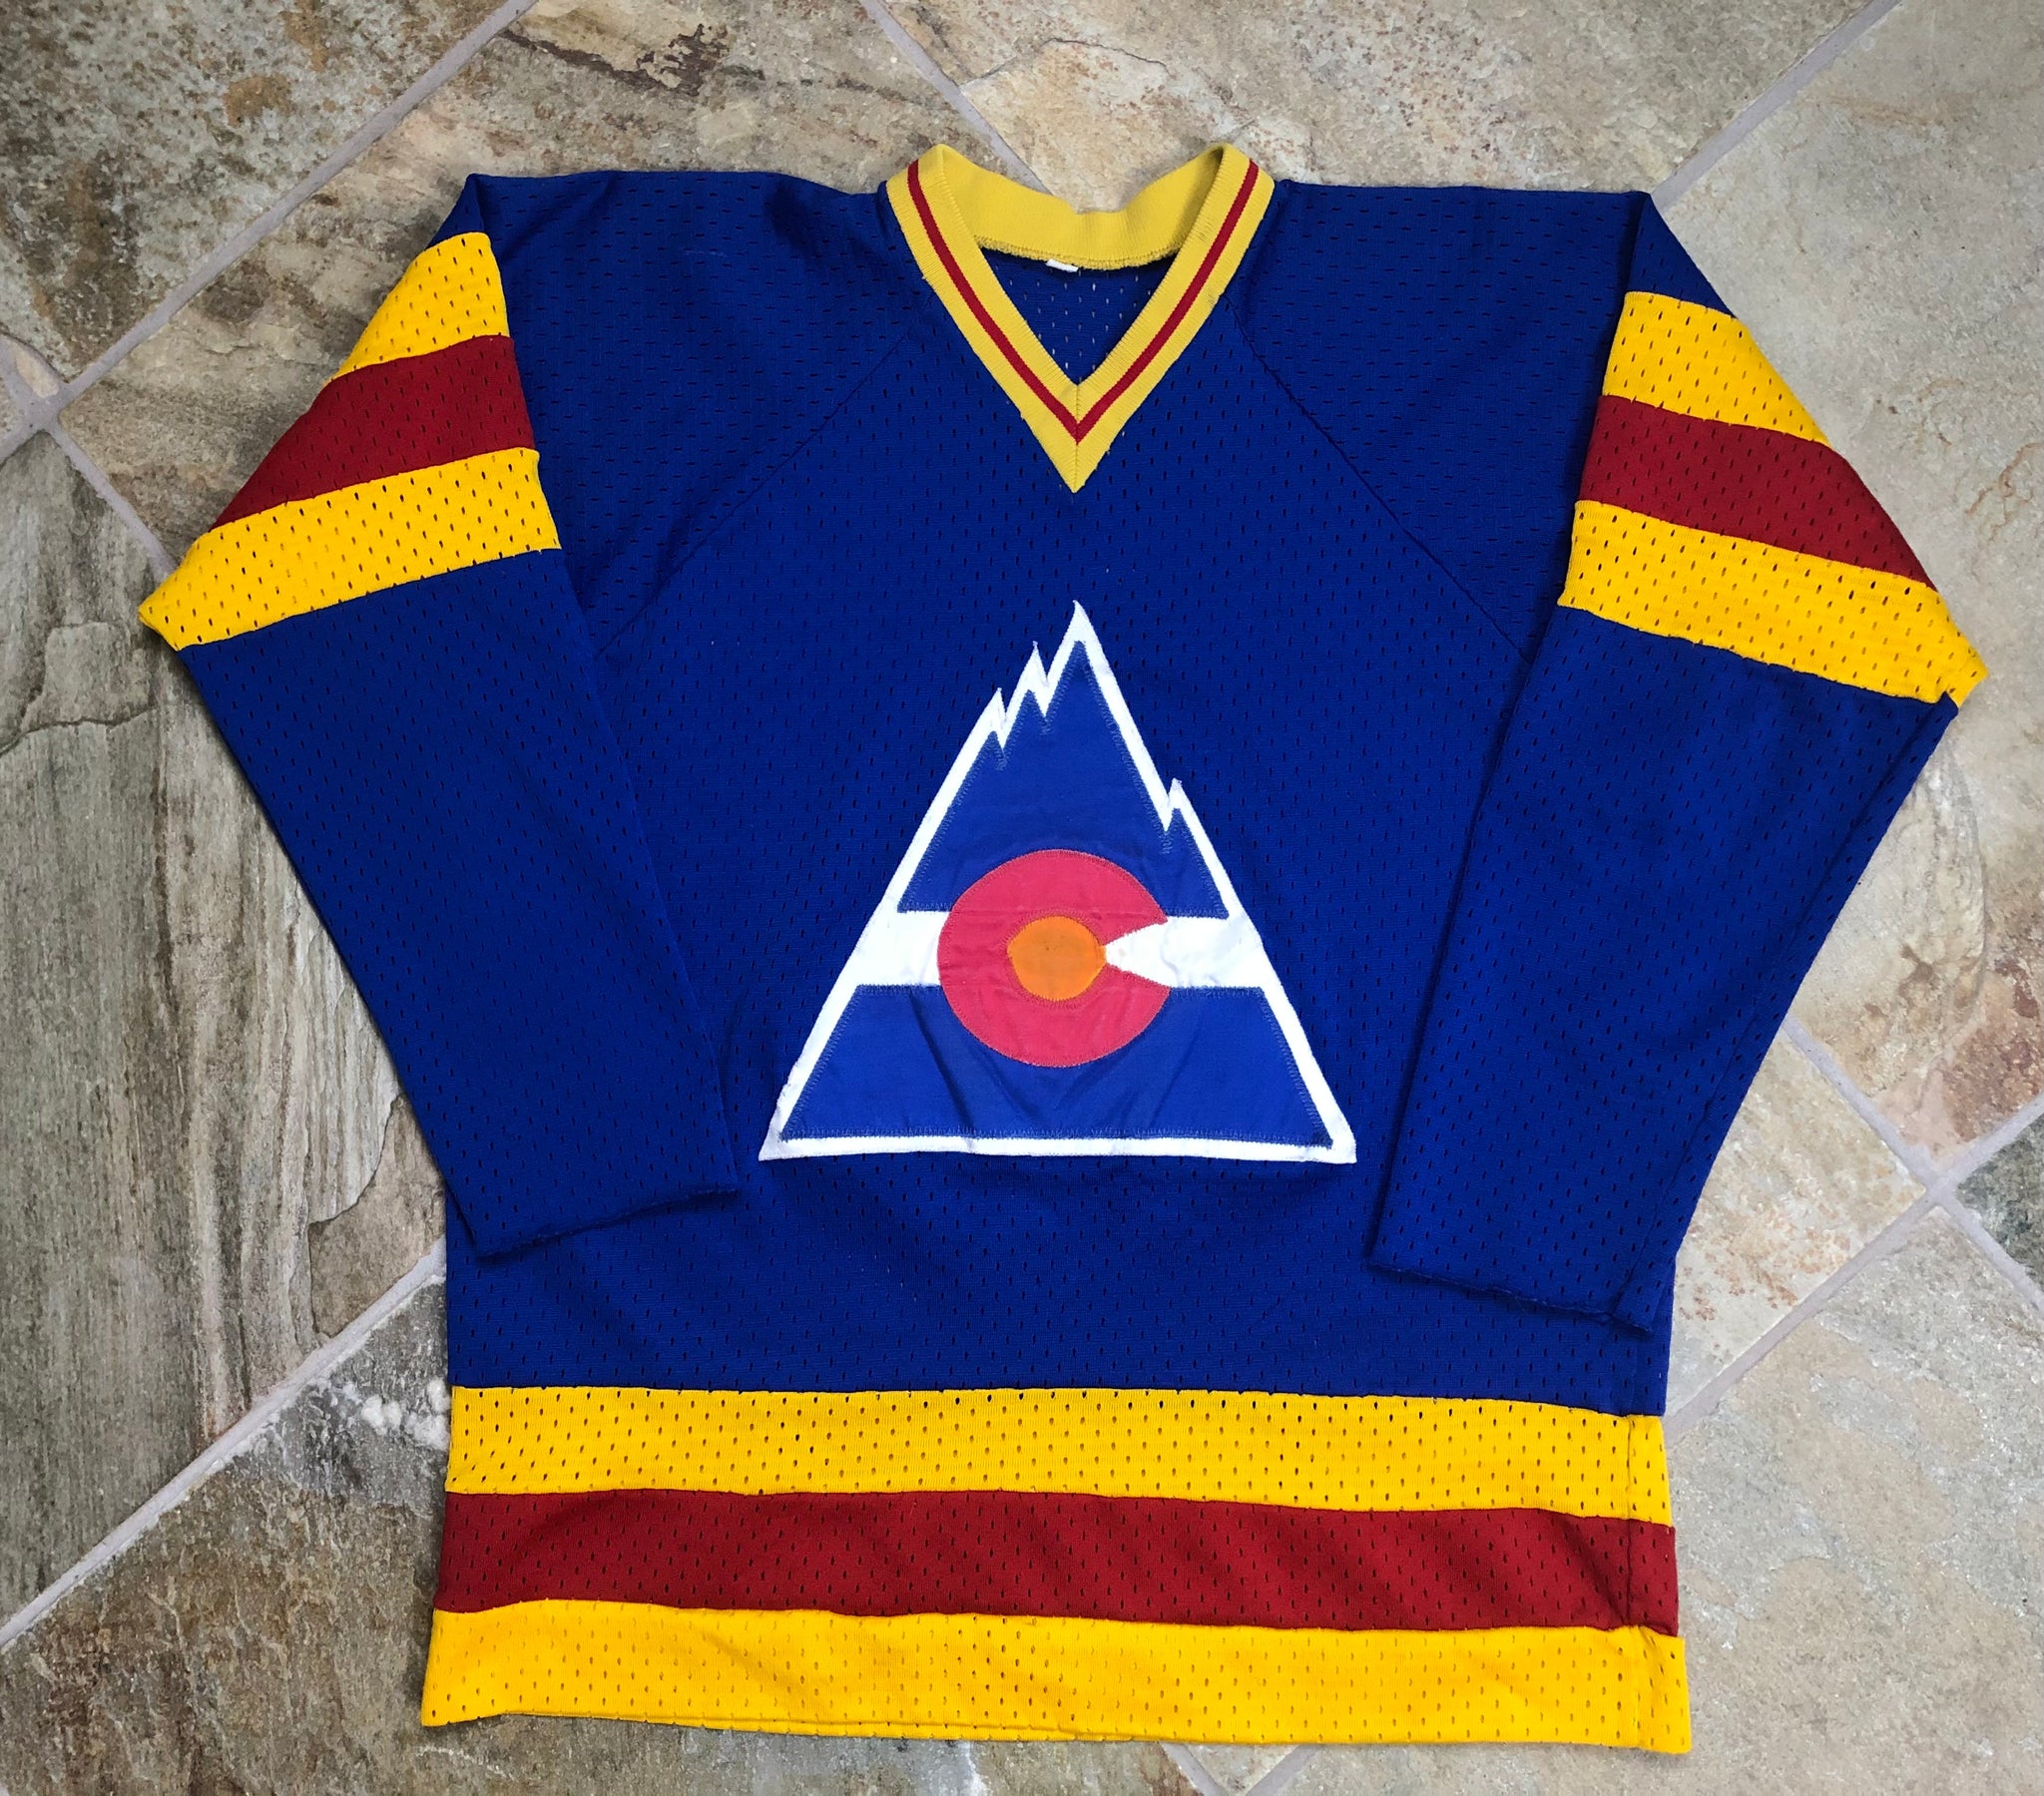 colorado rockies vintage hockey jersey